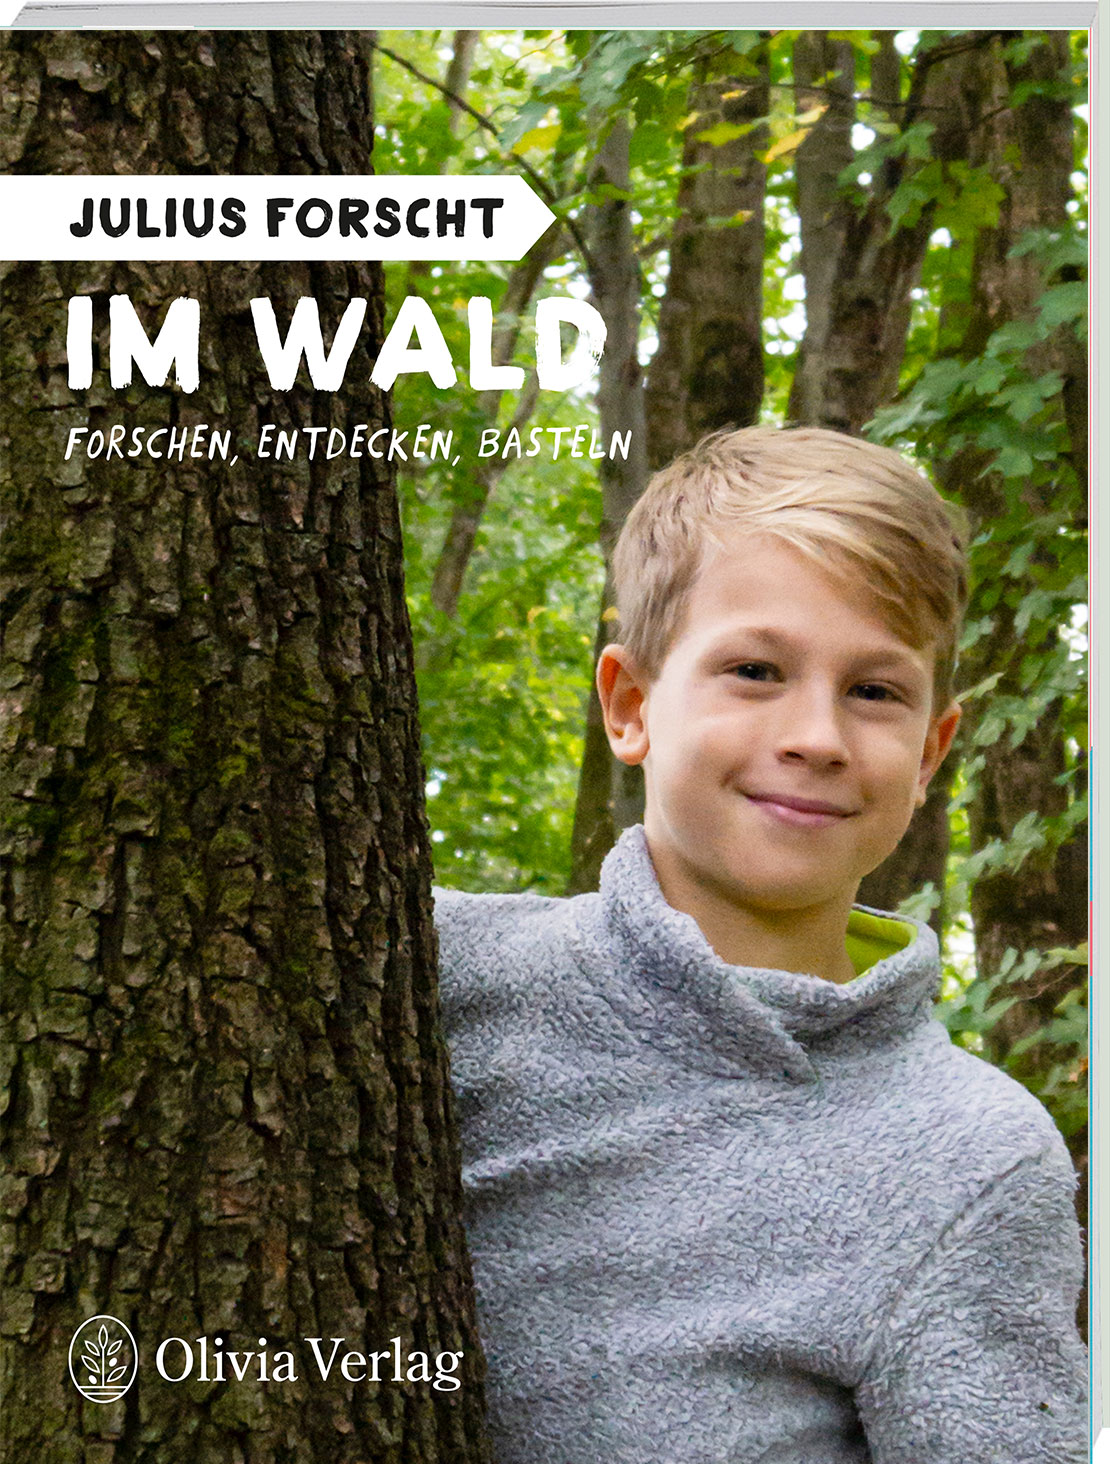 Julius forscht – Im Wald